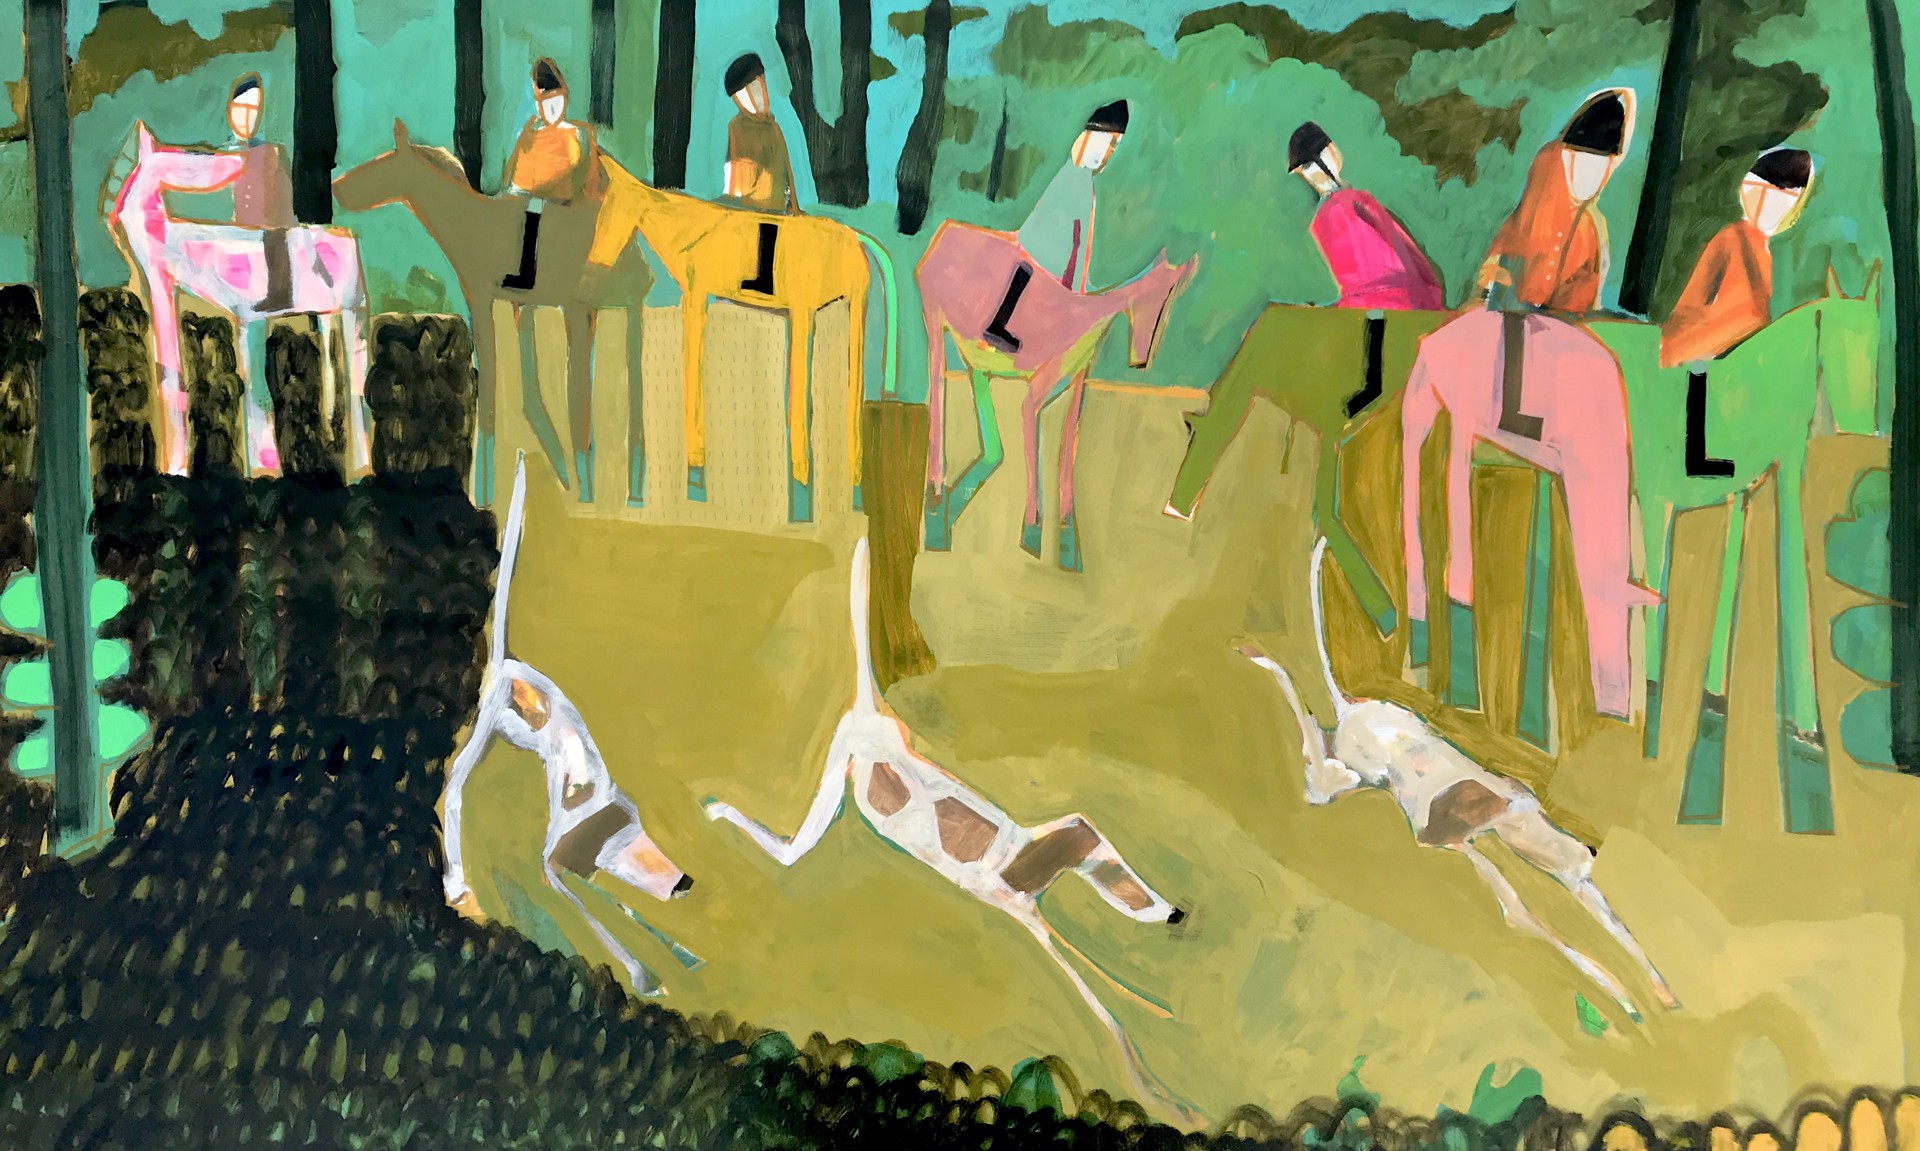 Lost in the Woods by Rachael Van Dyke